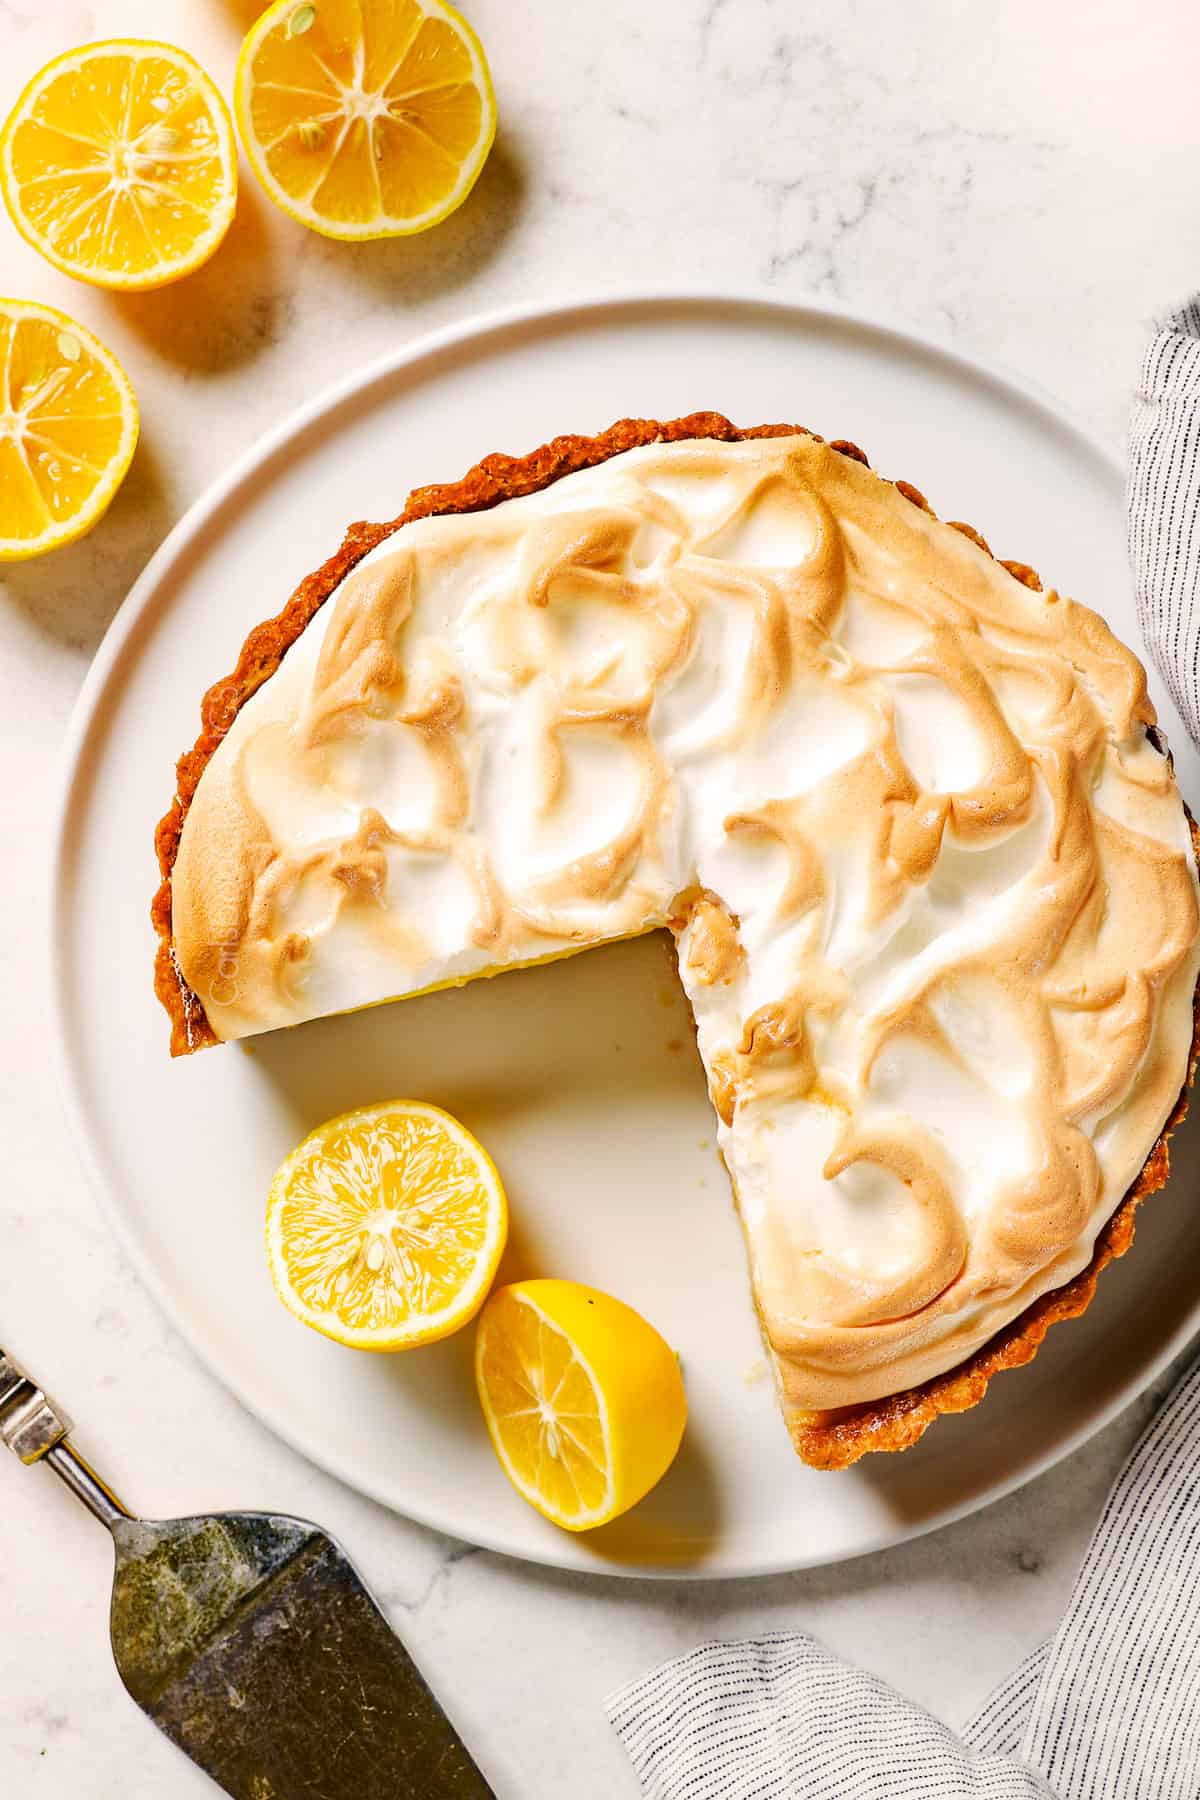 top view of Lemon Meringue Pie showing the beautiful golden meringue top